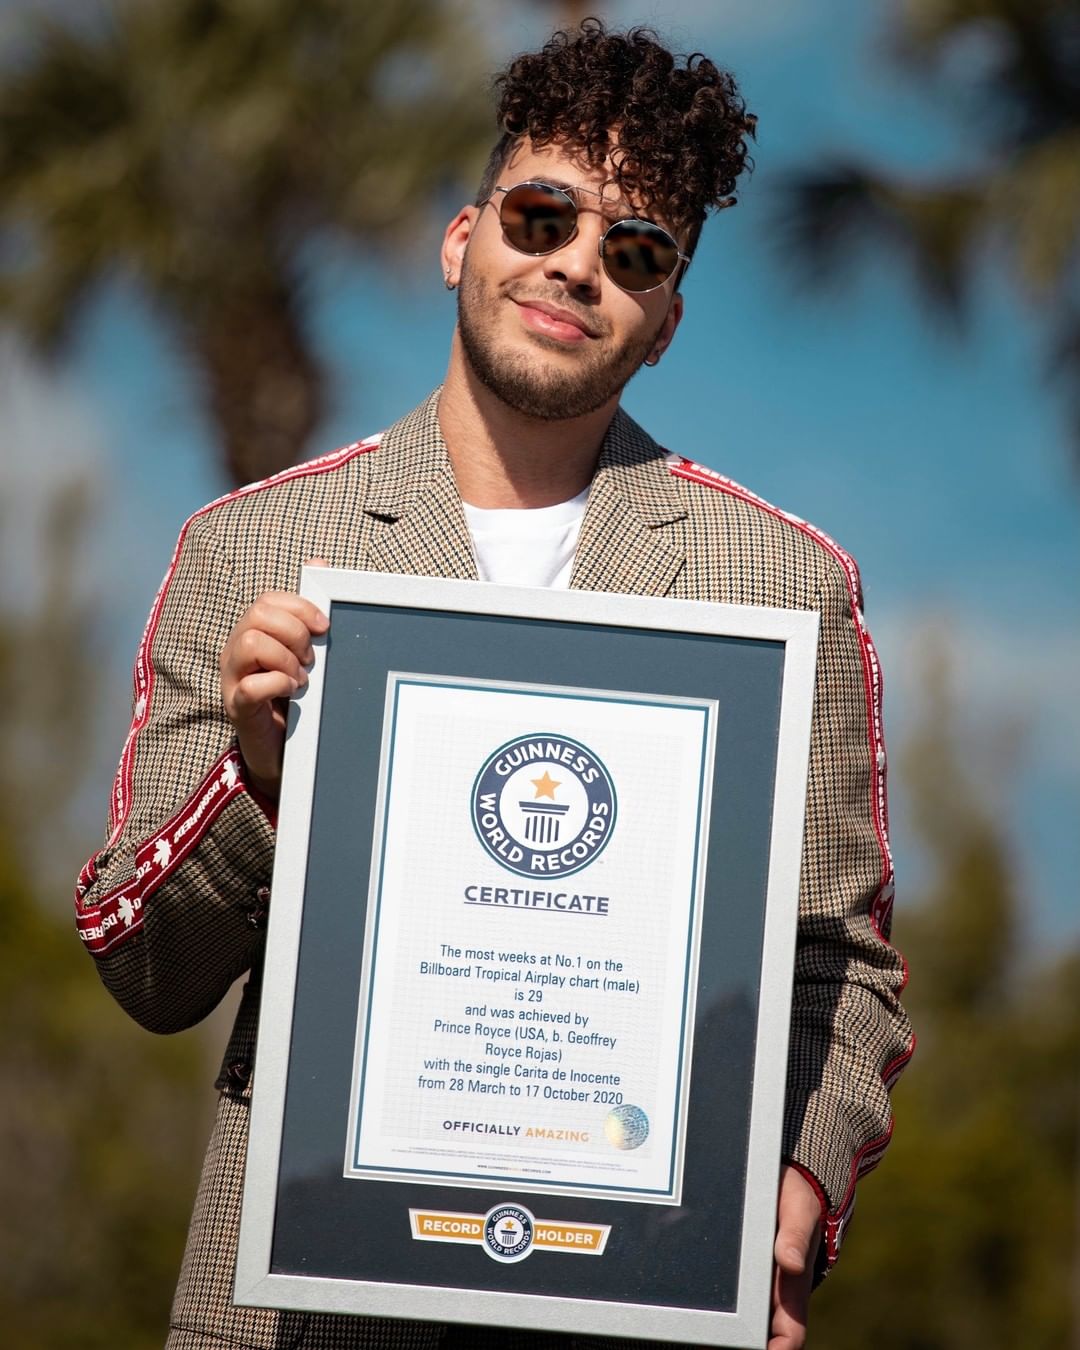 Prince Royce gana Record Guinness por ser el artista con más semanas siendo el #1er Billboard Tropical Airplay